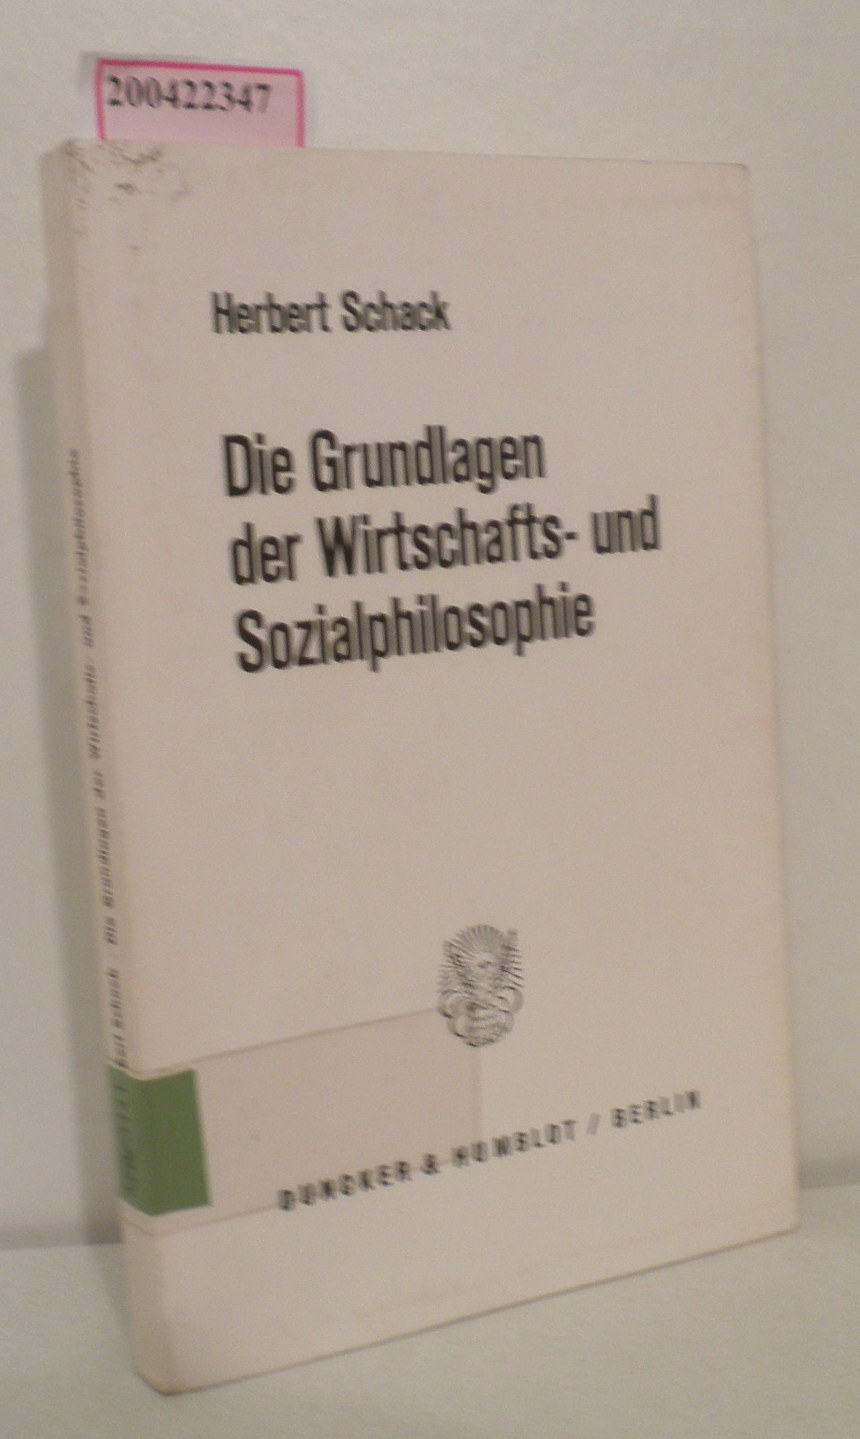 Die Grundlagen der Wirtschafts- und Sozialphilosophie von Herbert Schack - Schack, Herbert